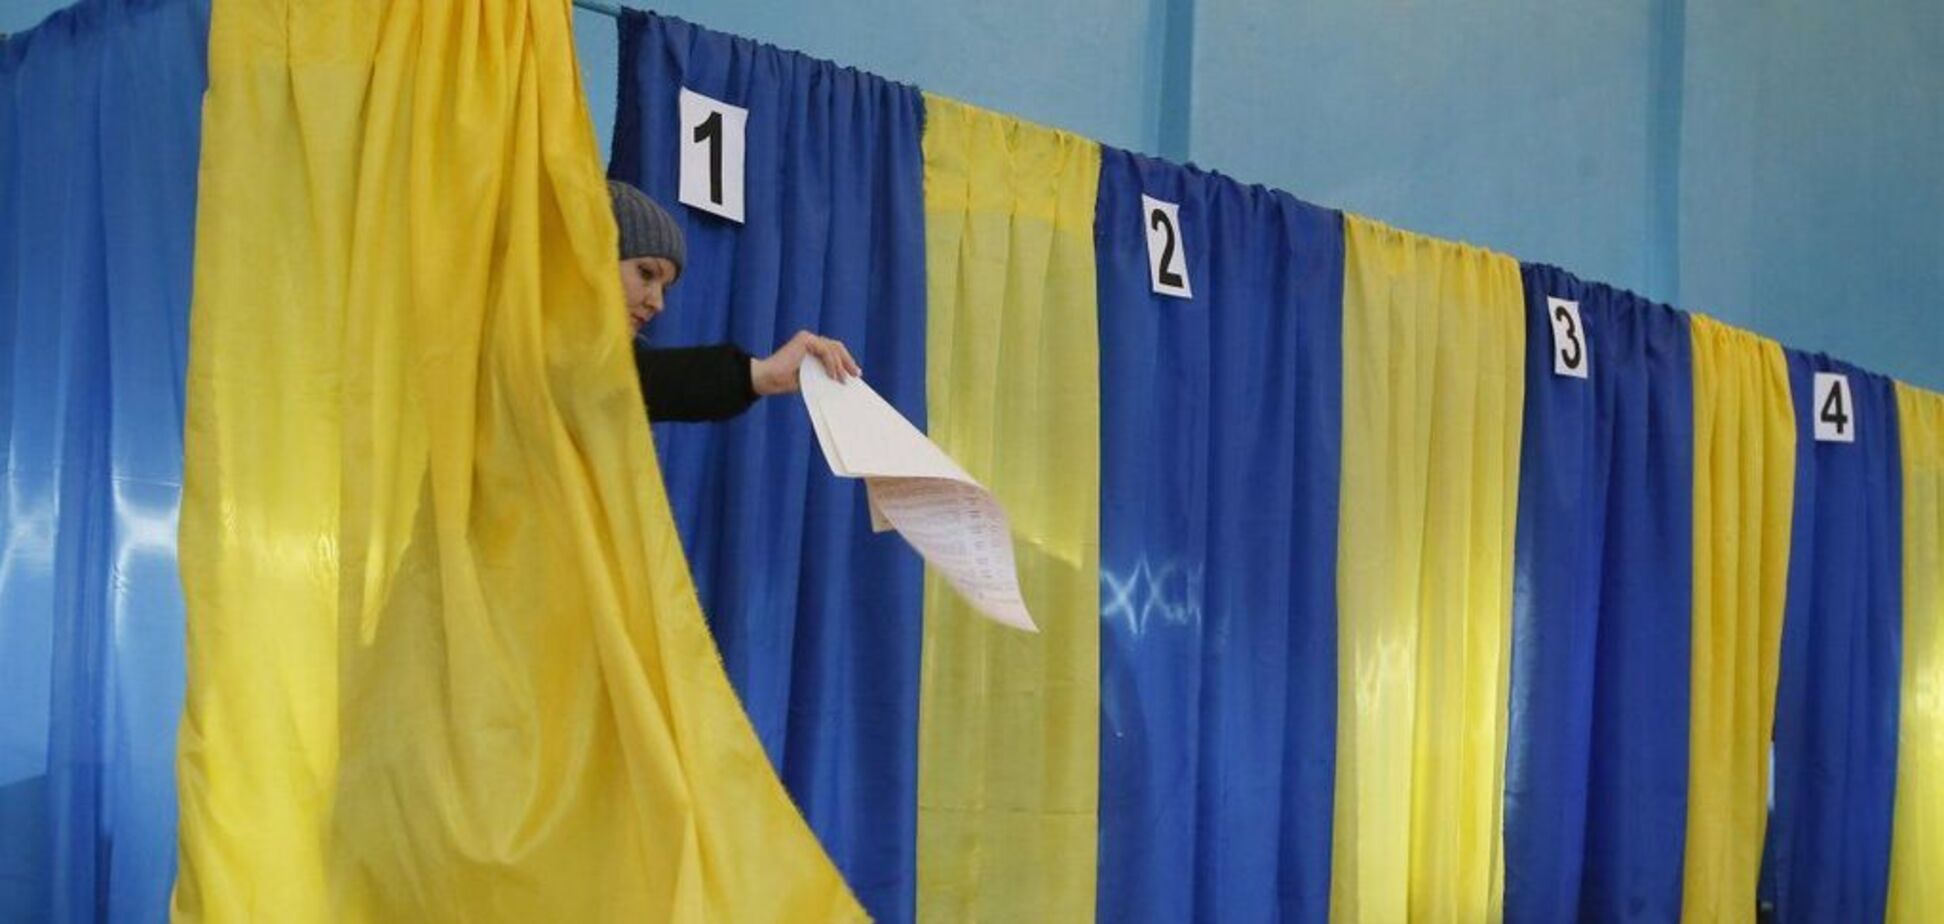 Телефон за селфи на участке: под Днепром 'купят' высокую явку на выборах